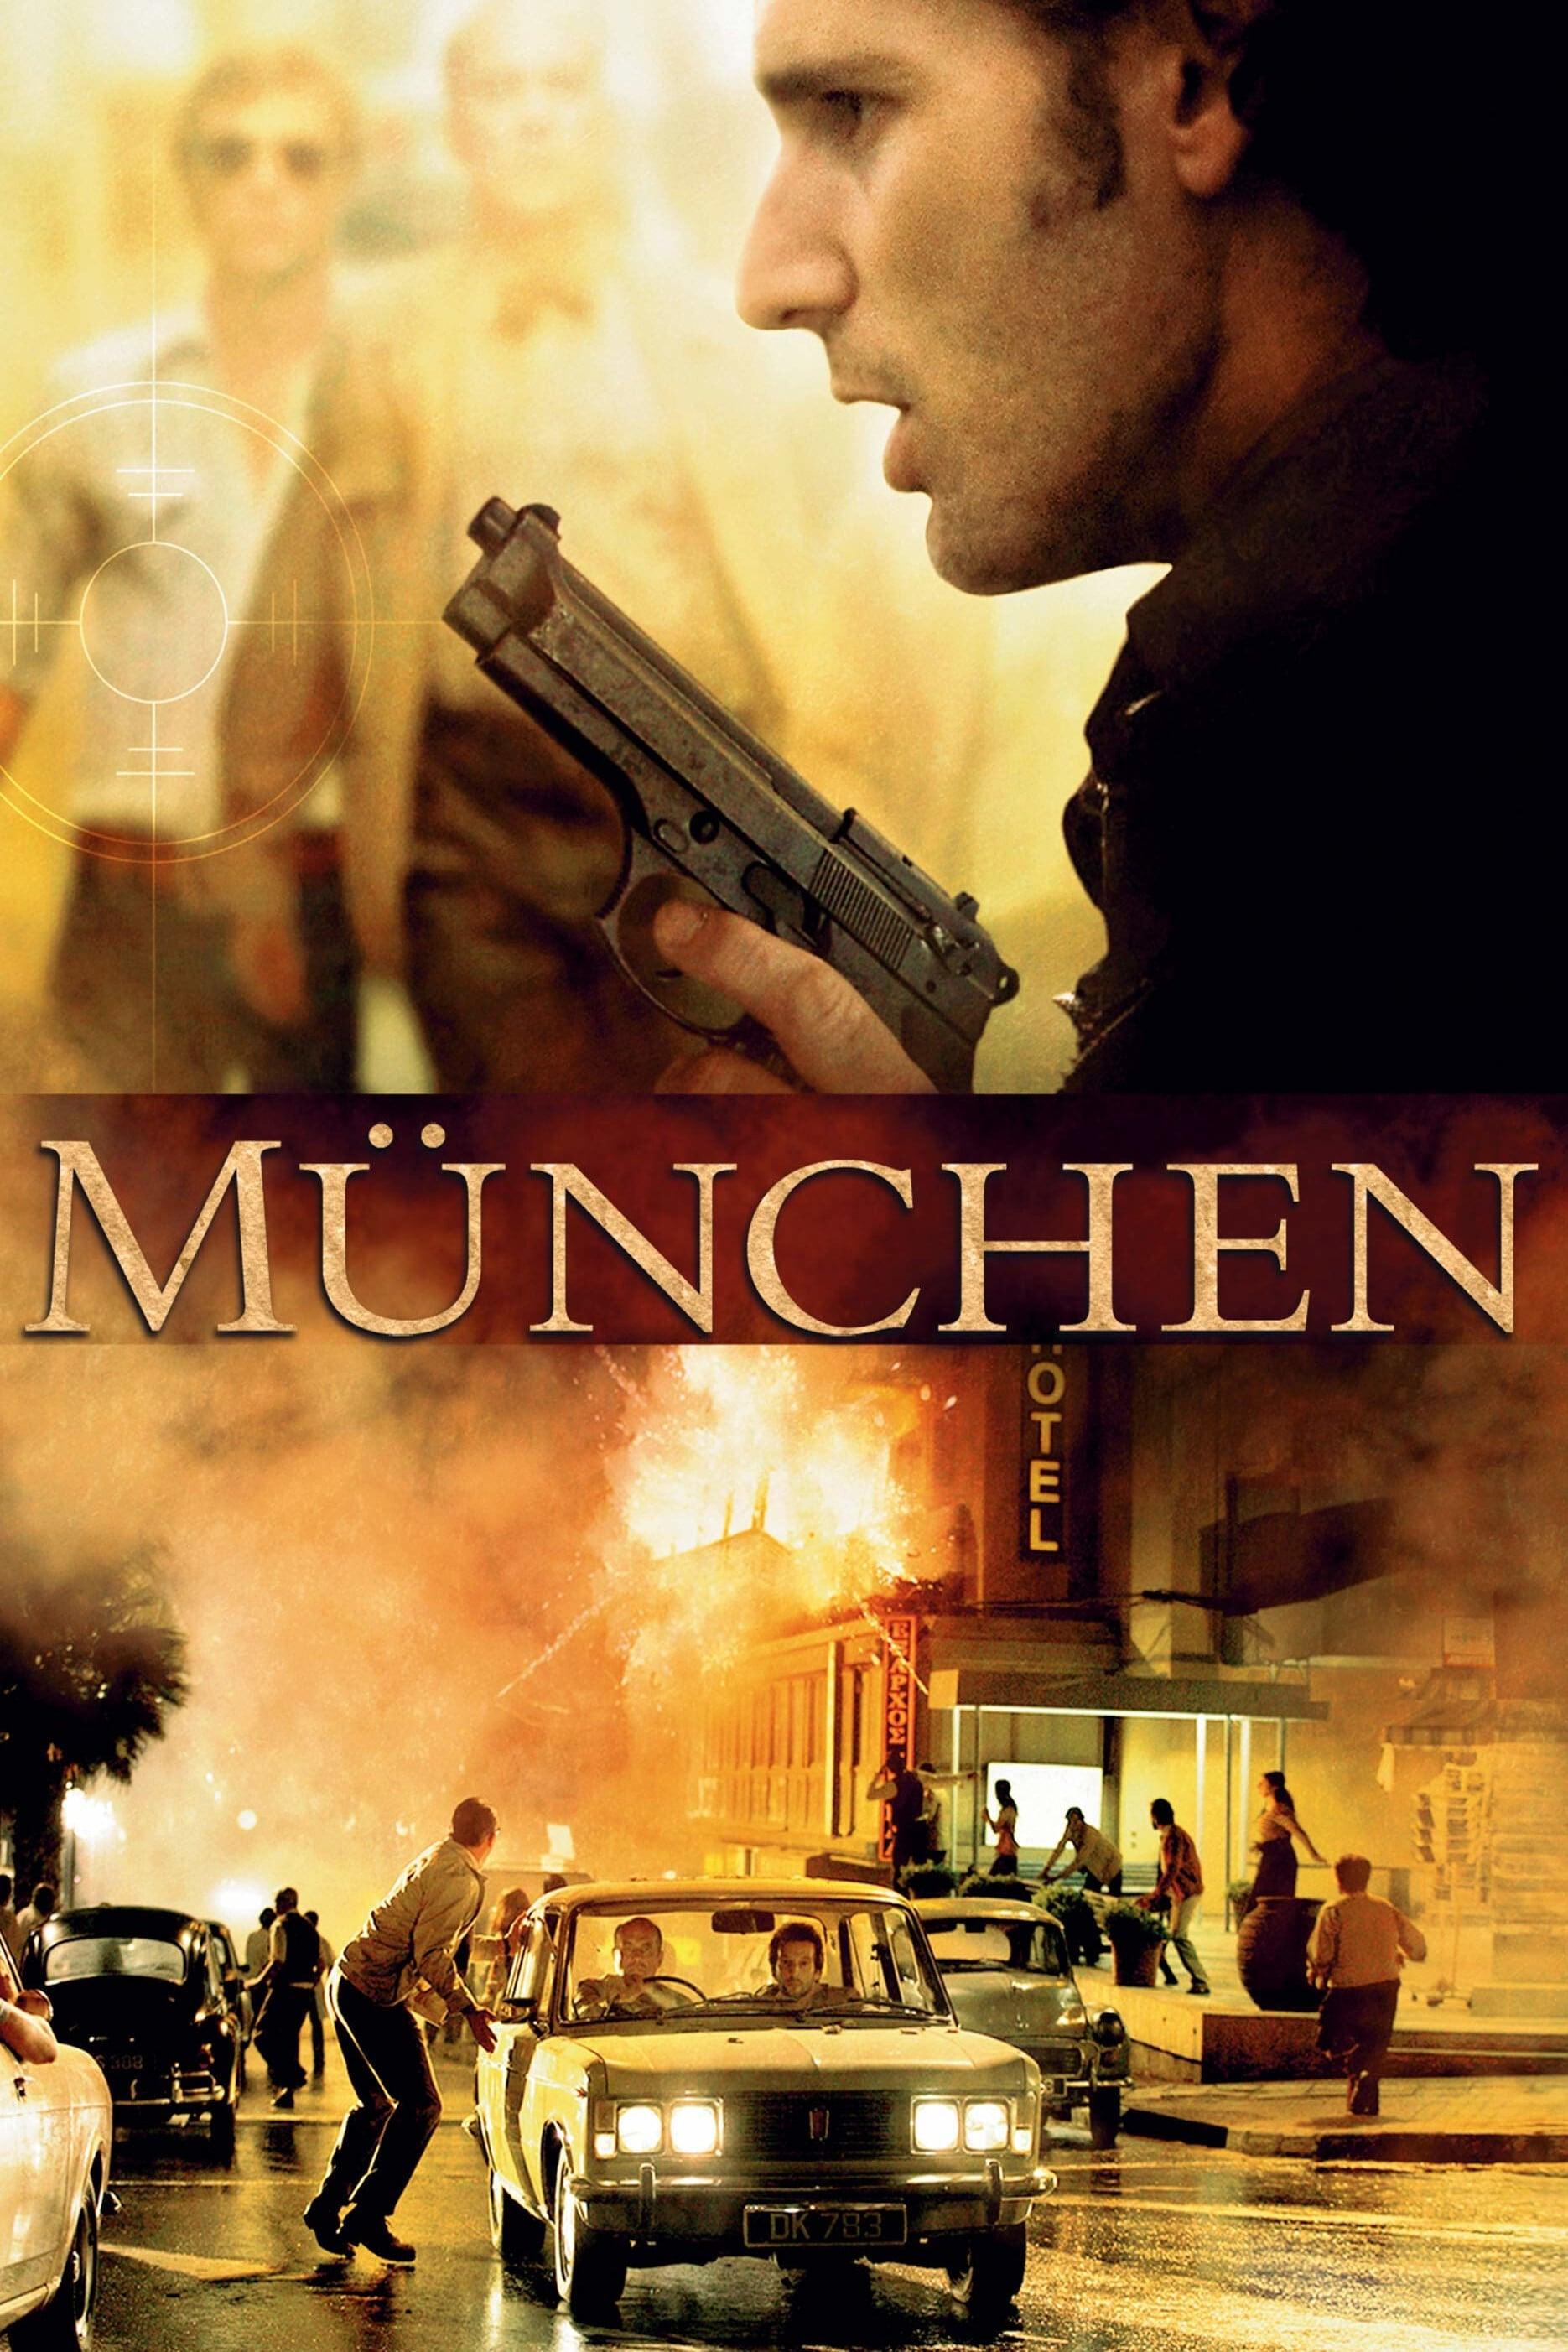 München poster